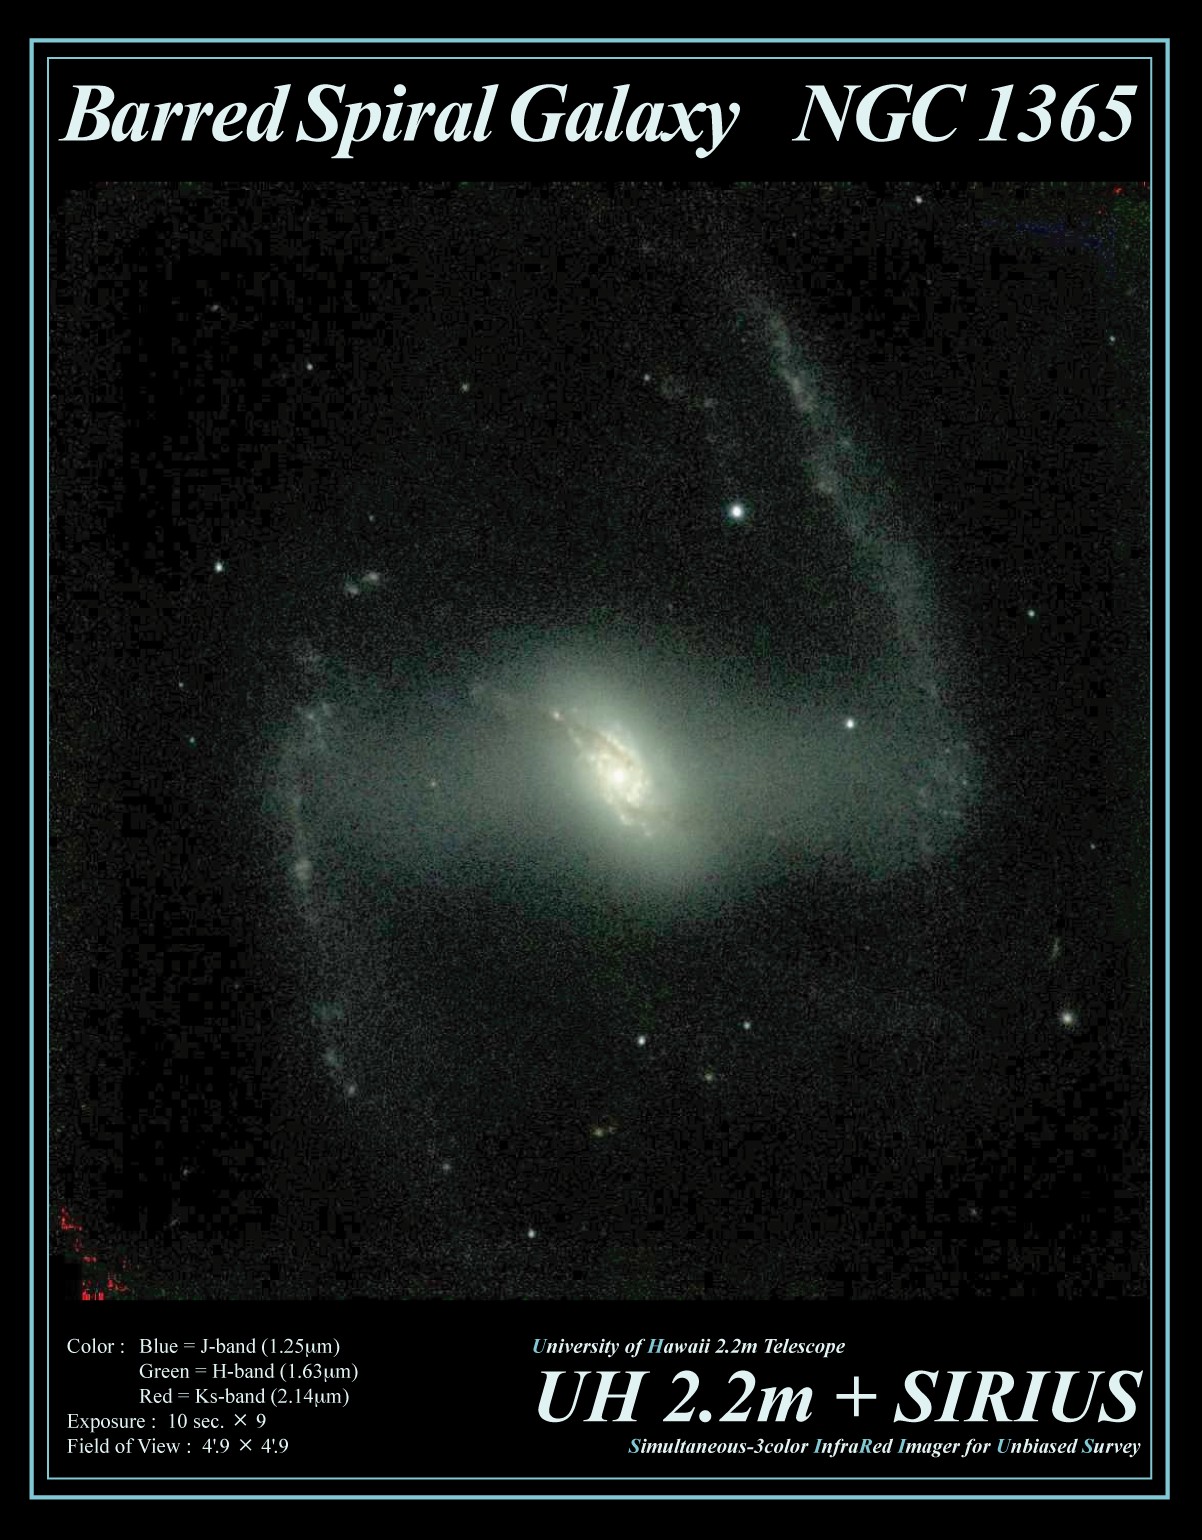 External Galaxy NGC1365